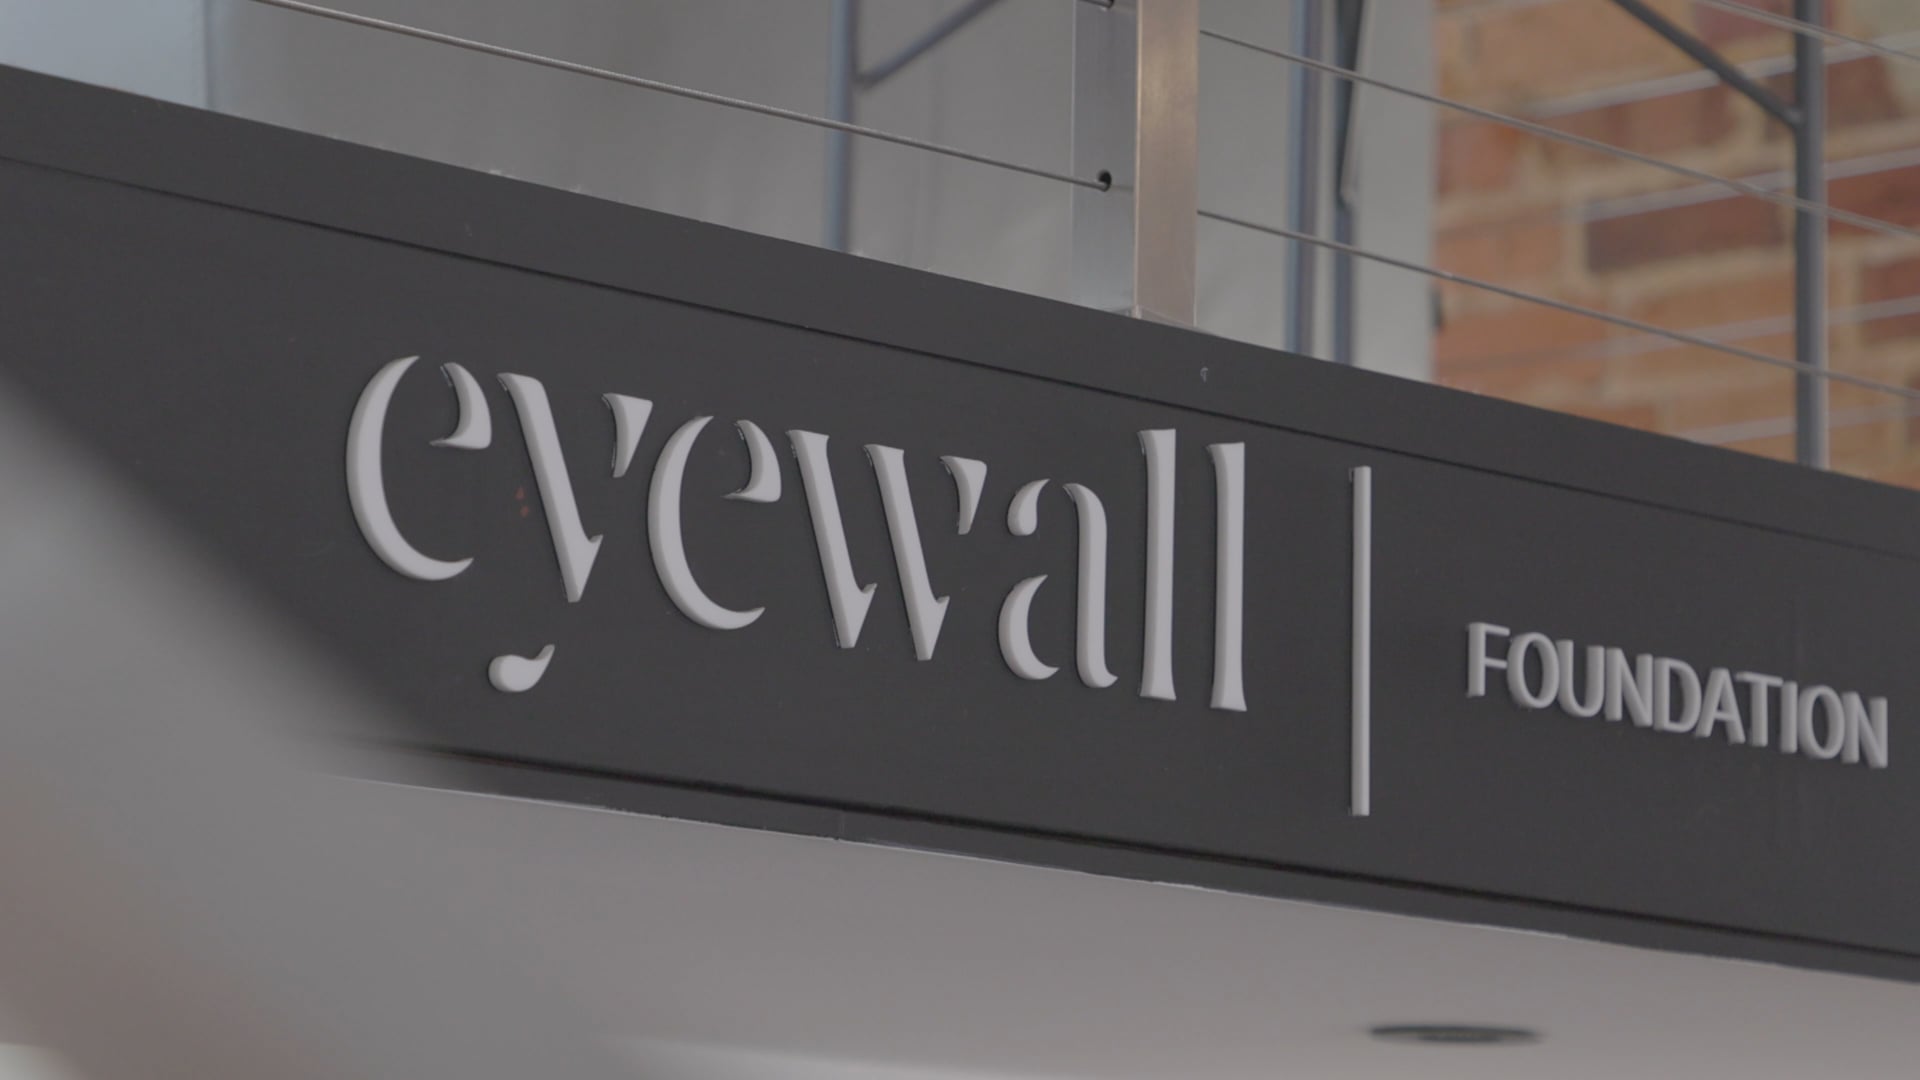 EYEWALL Foundation